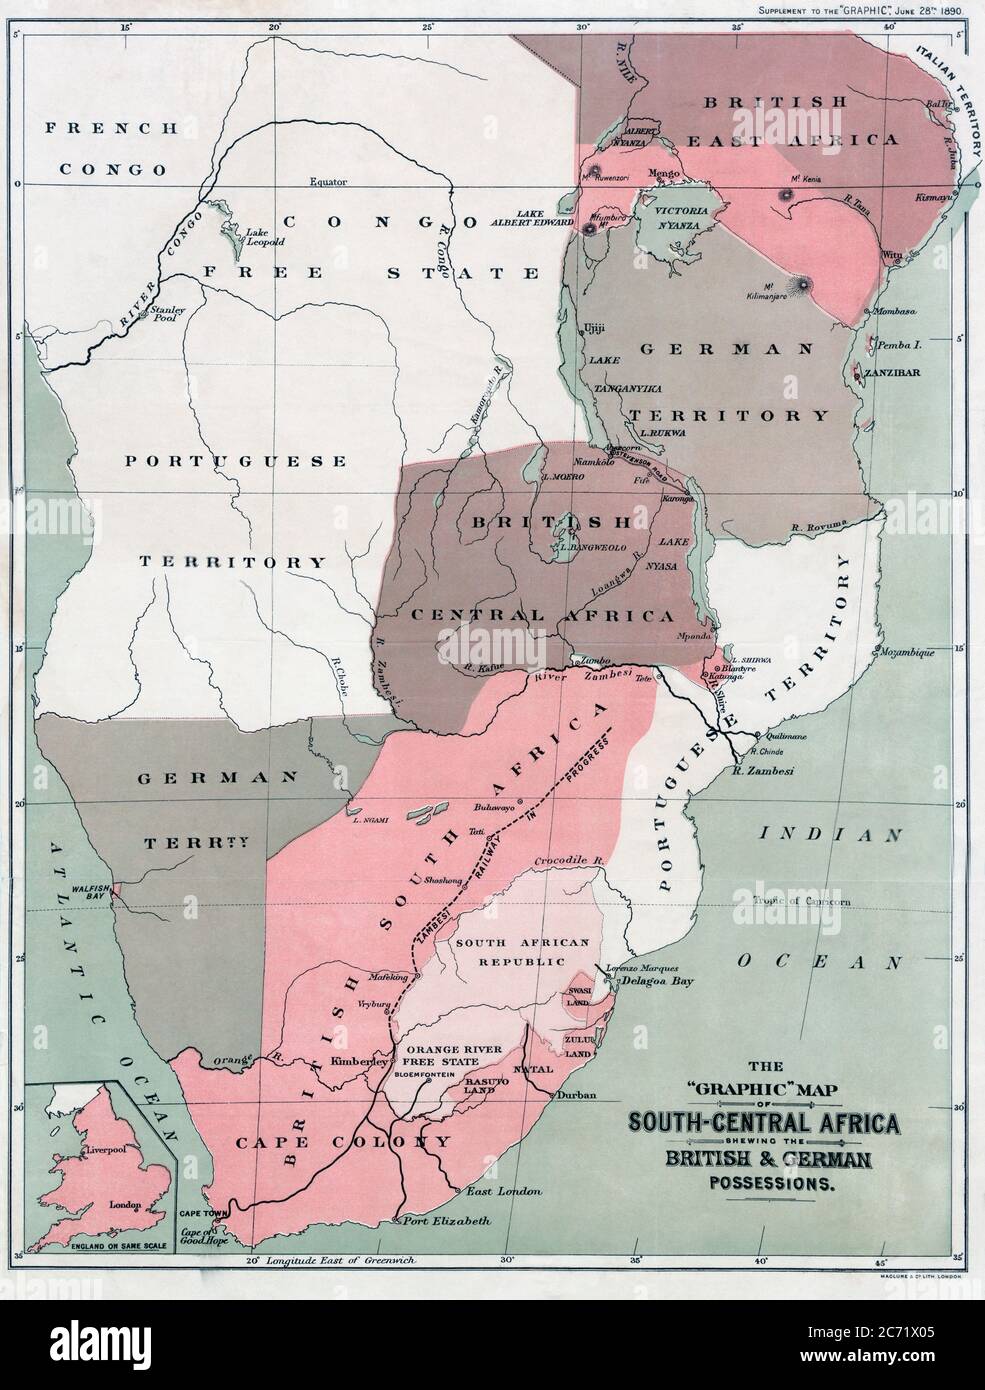 Mappa dell'Africa centro-meridionale che mostra i possedimenti britannici e tedeschi nel 1890. Dopo una mappa pubblicata il 25 giugno 1890 edizione della Grafica. La mappa inset, in basso a sinistra, mostra l'Inghilterra sulla stessa scala della mappa africana. Foto Stock